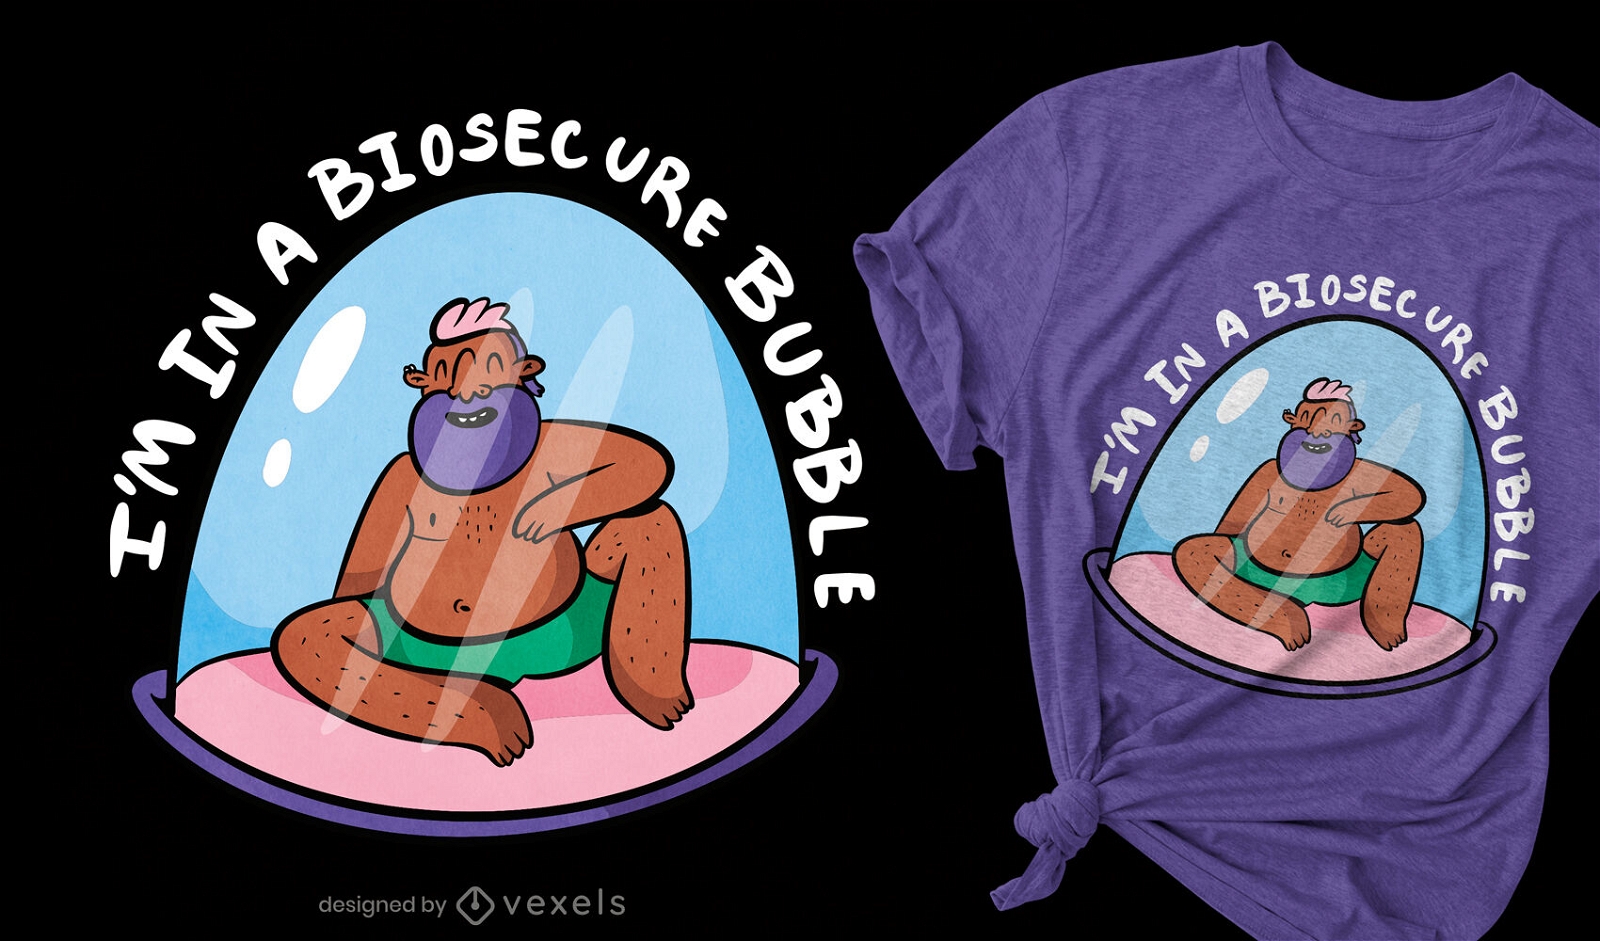 Biosecure bubble t-shirt design